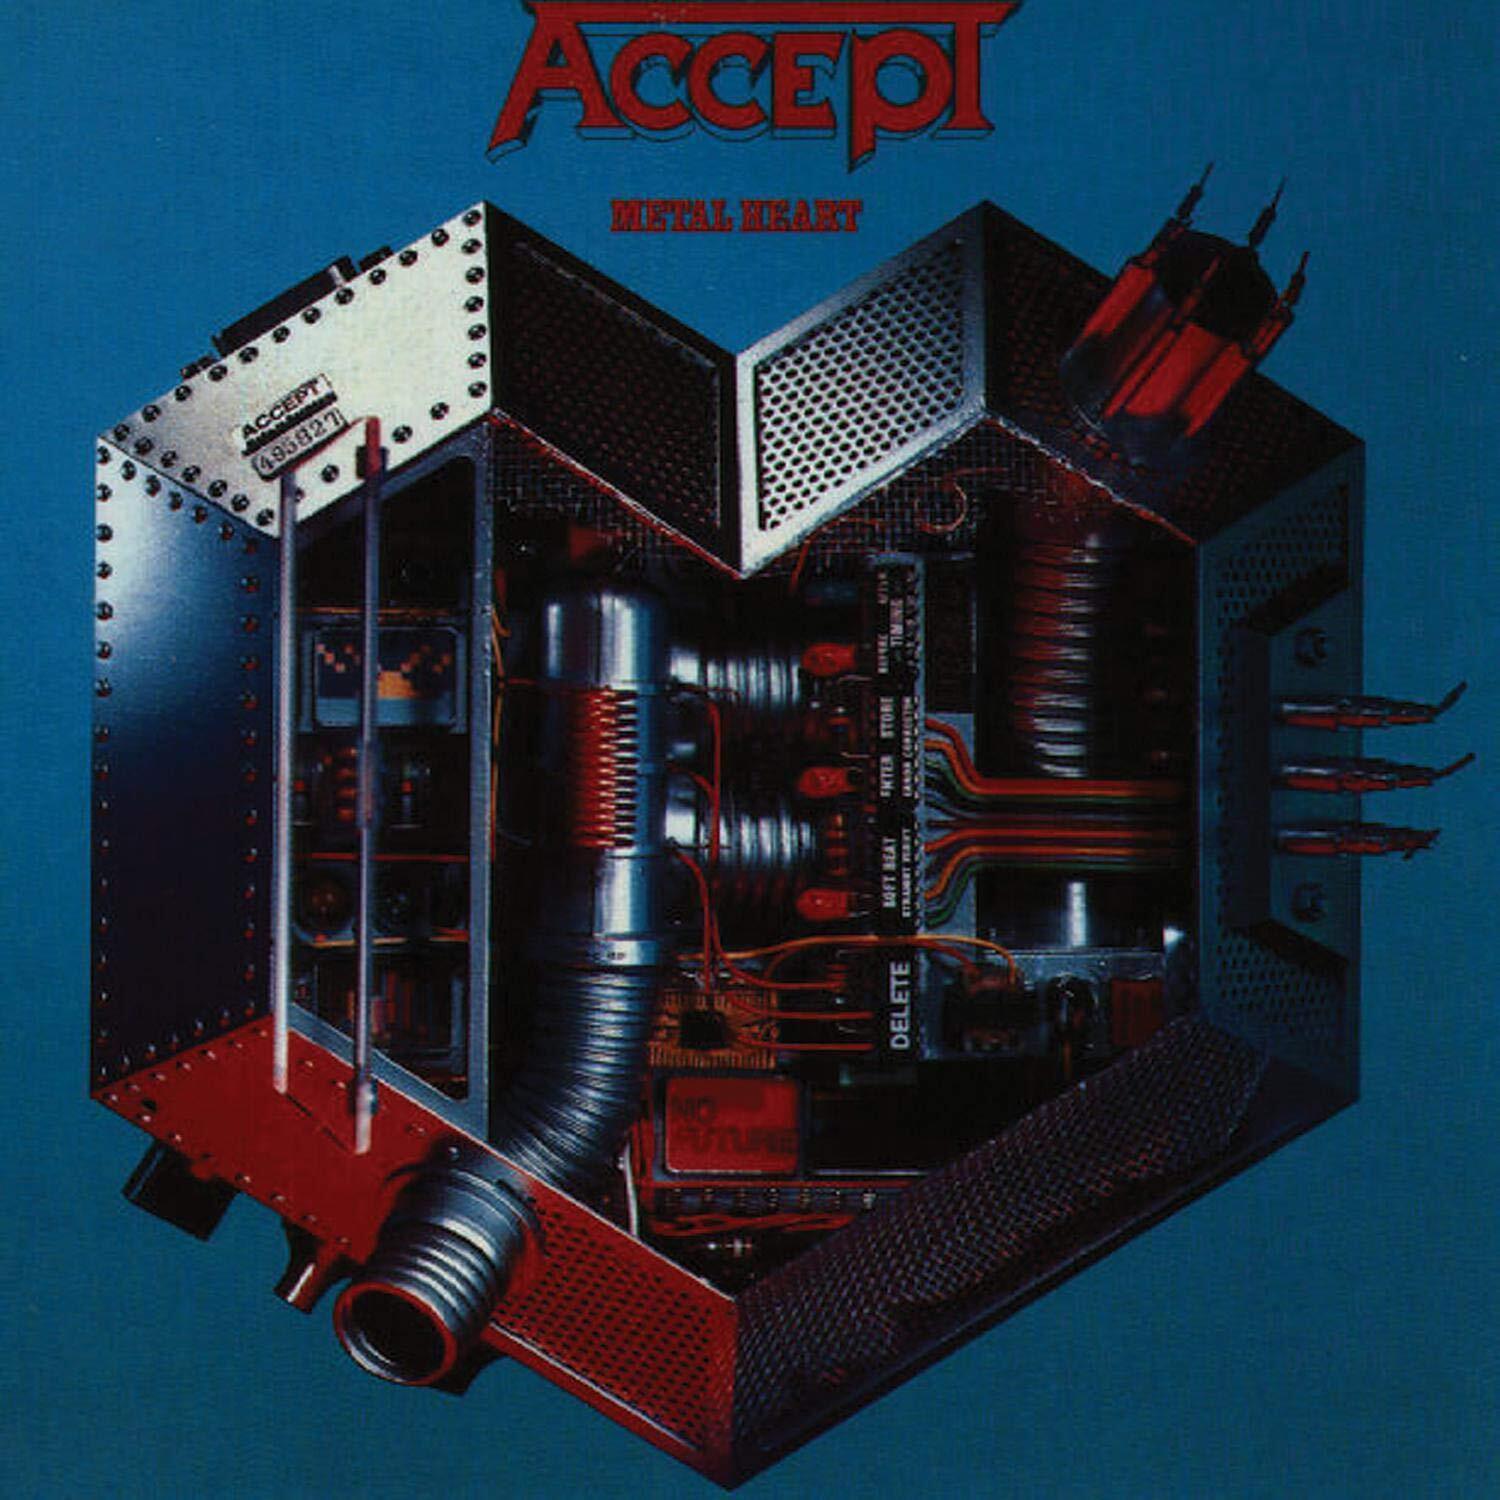 Accept Metal Heart (CD)